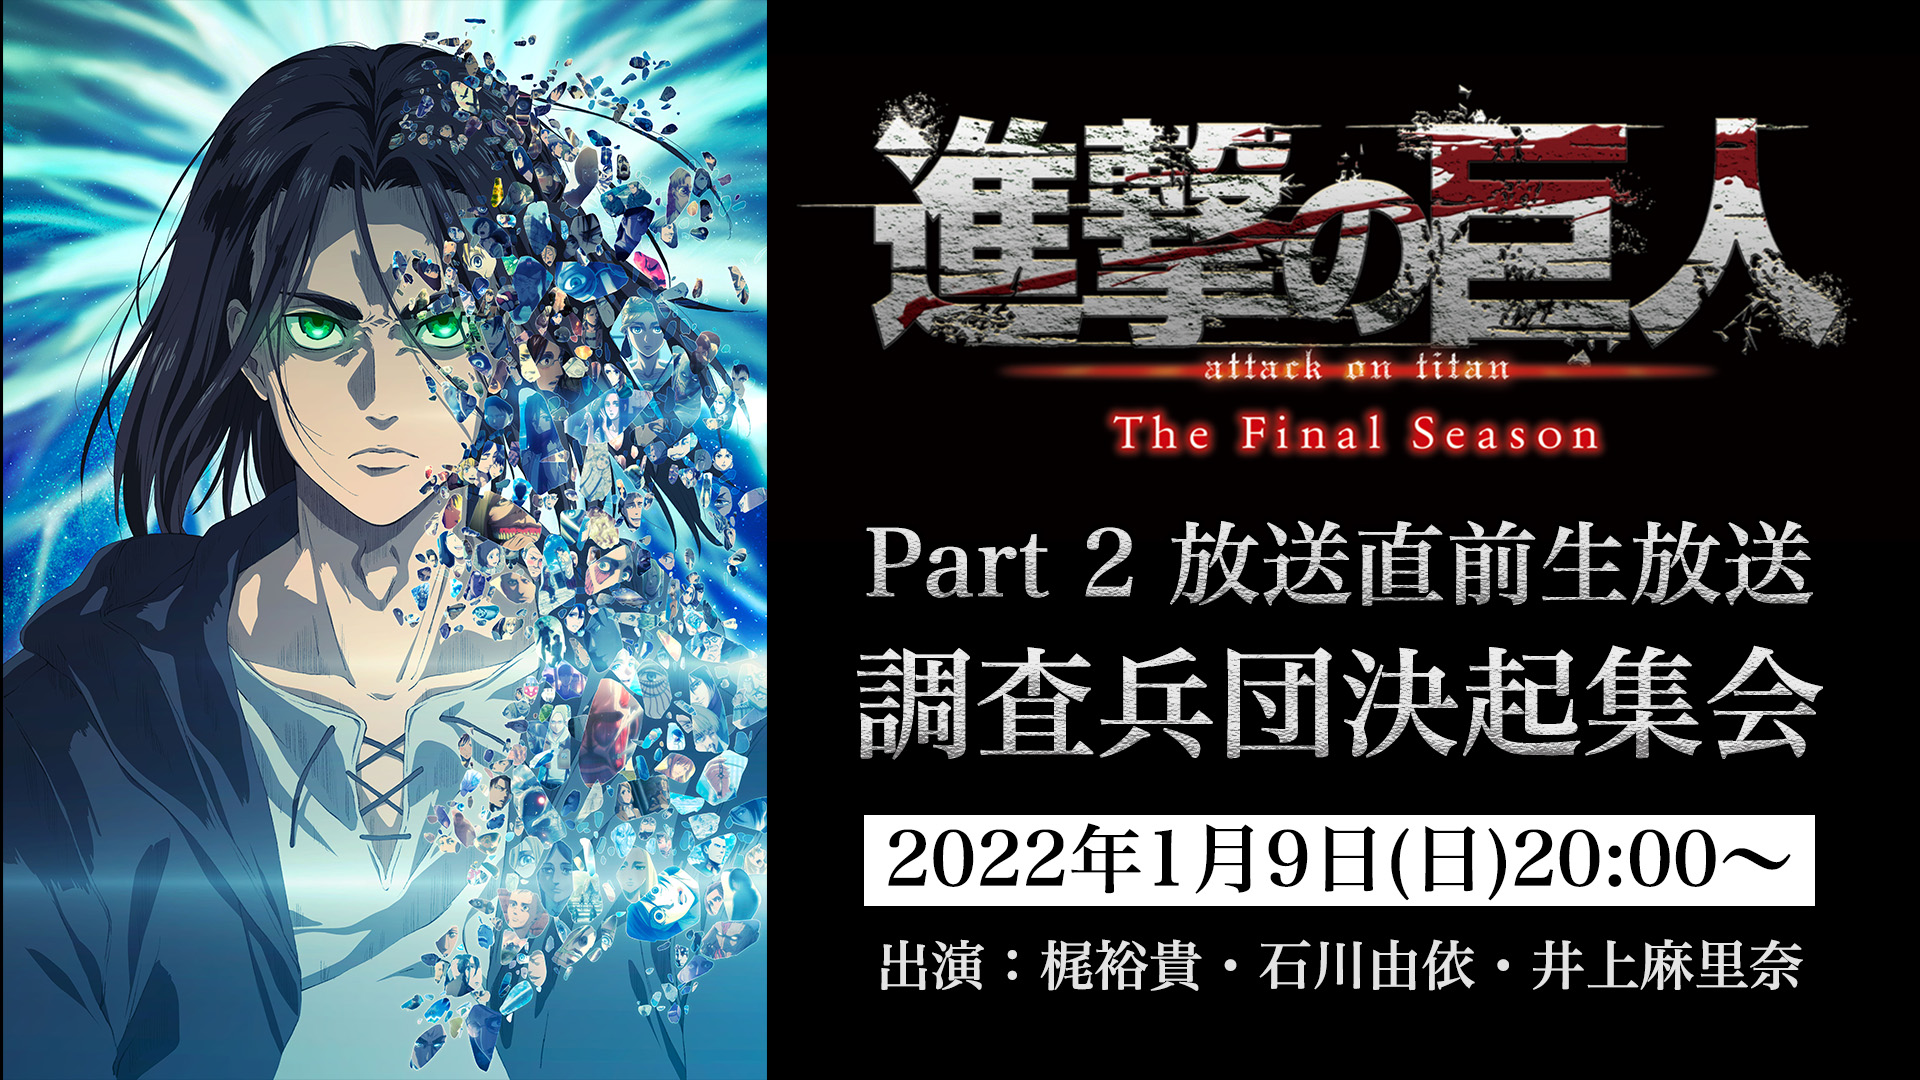 Shingeki no Kyojin: The Final Season, Part 2 Trailer